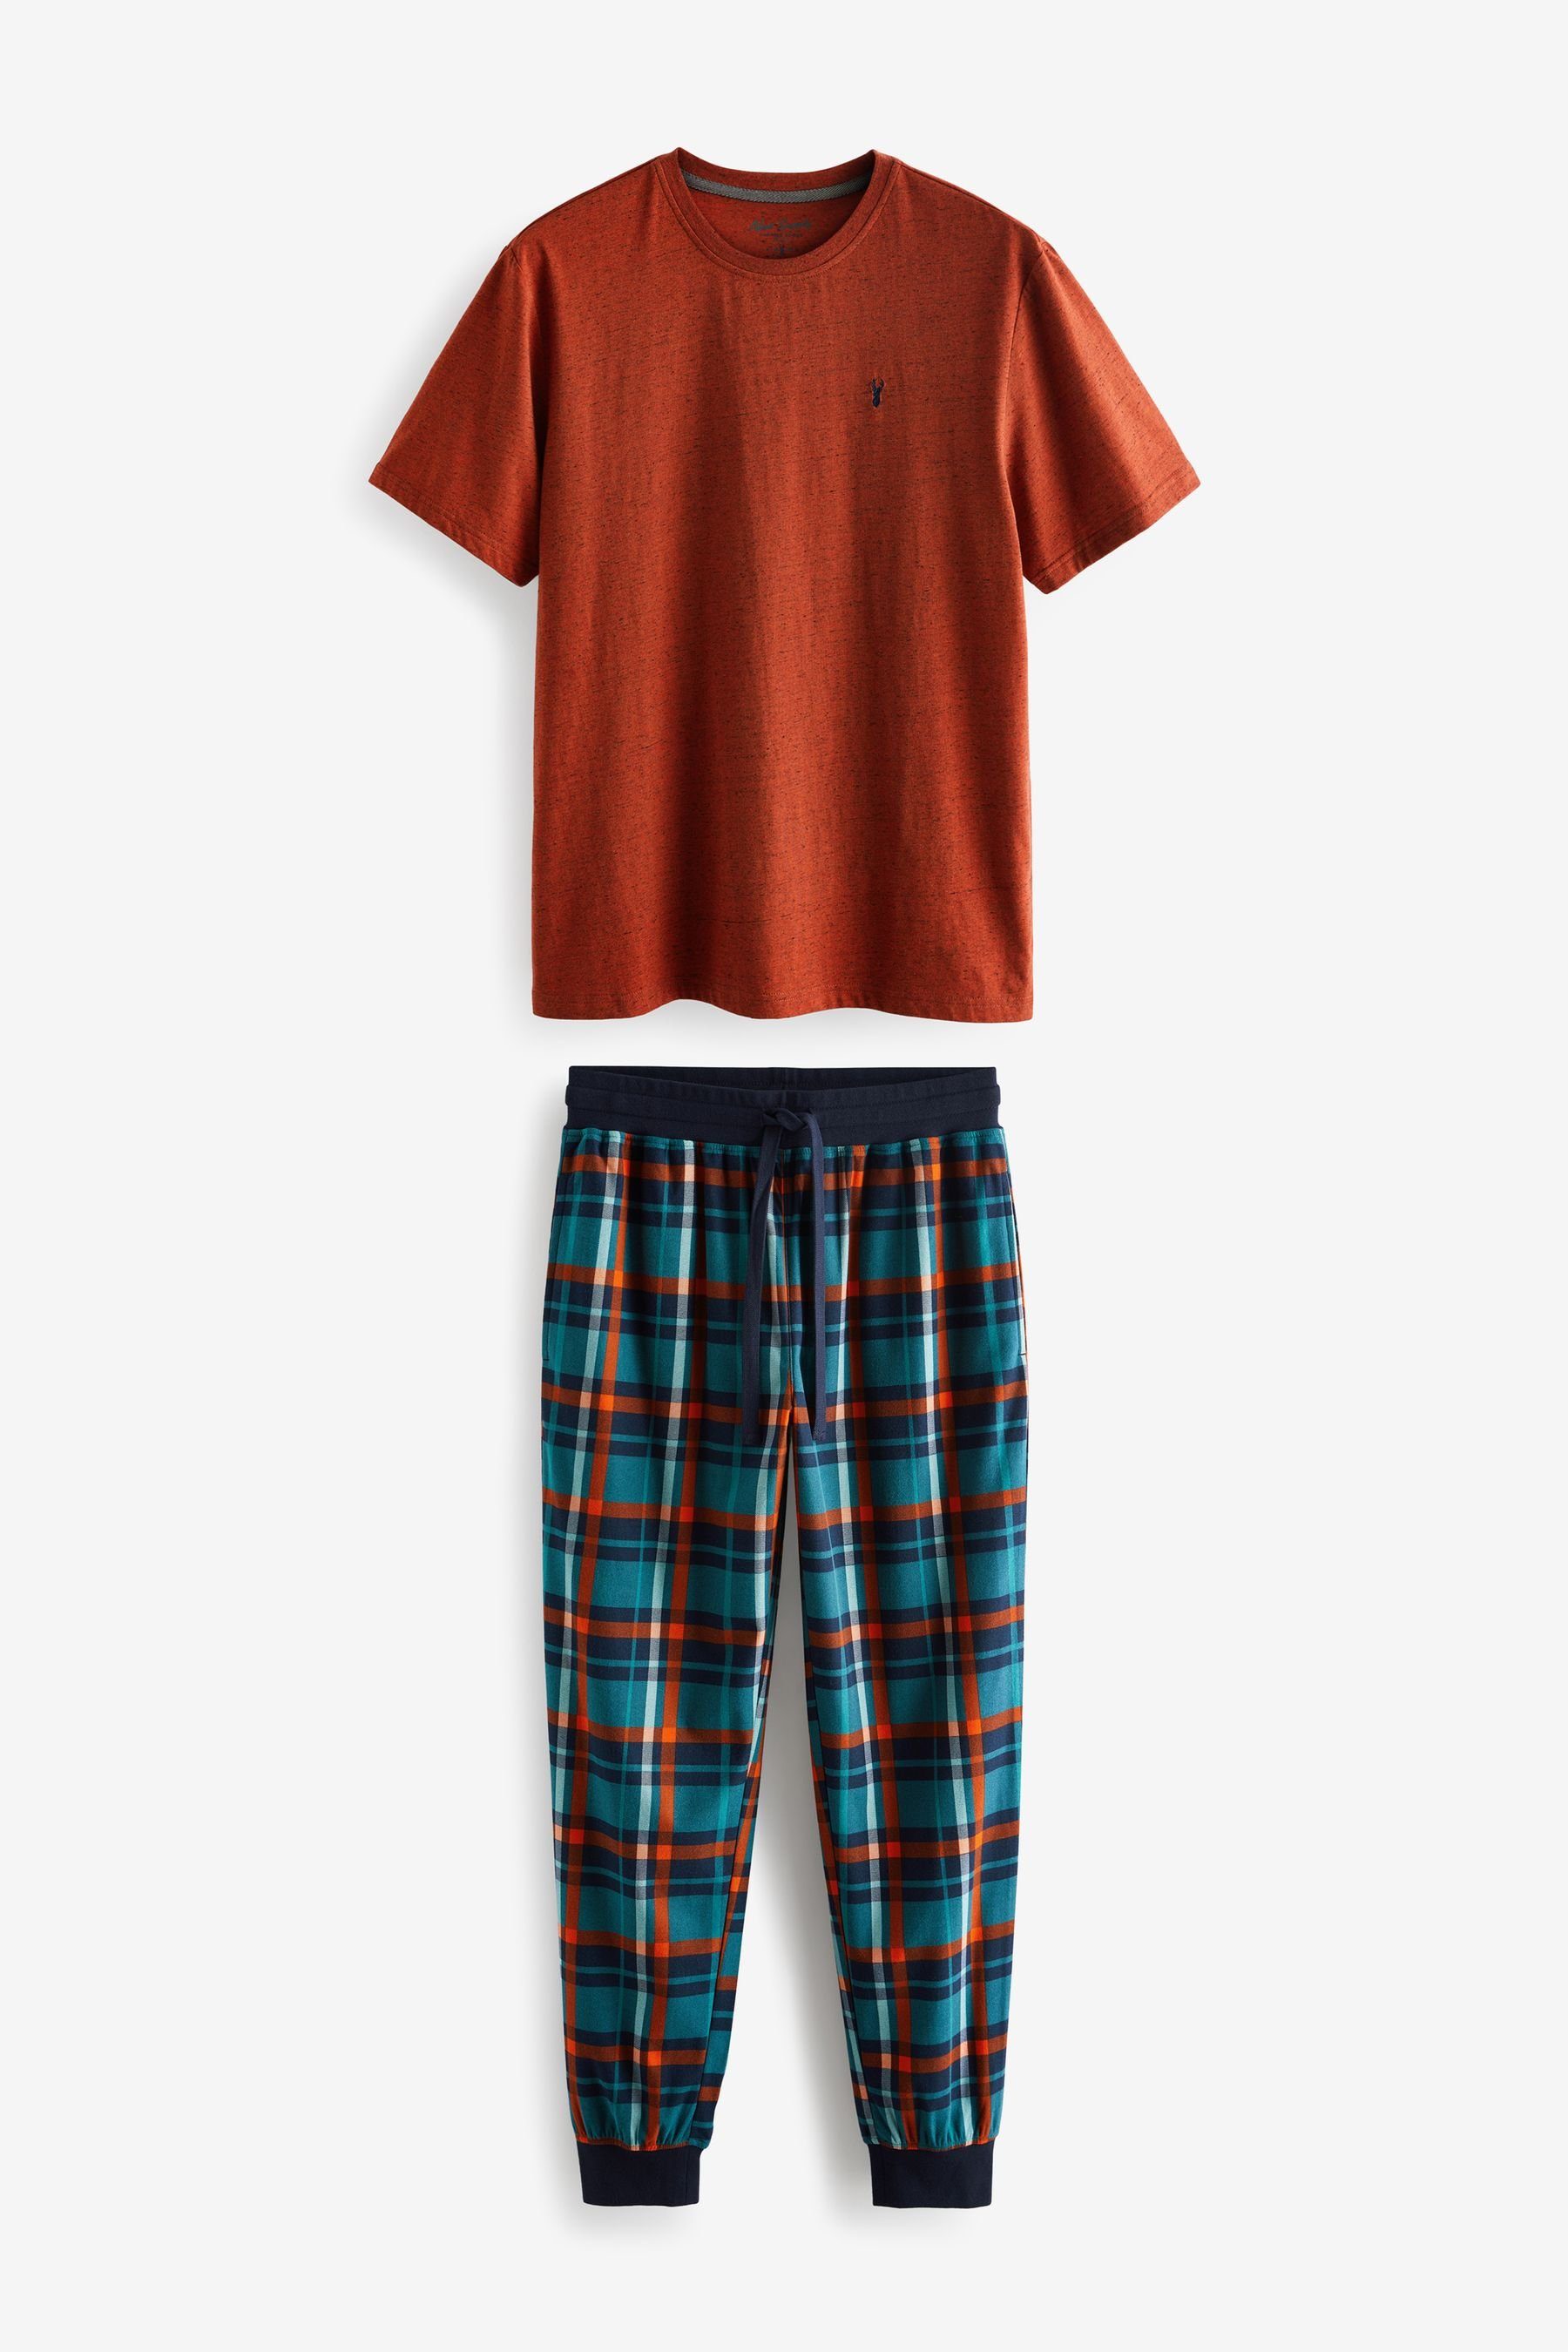 Next Pyjama MotionFlex Kuscheliger Schlafanzug mit Bündchen (2 tlg) Orange/Green Check